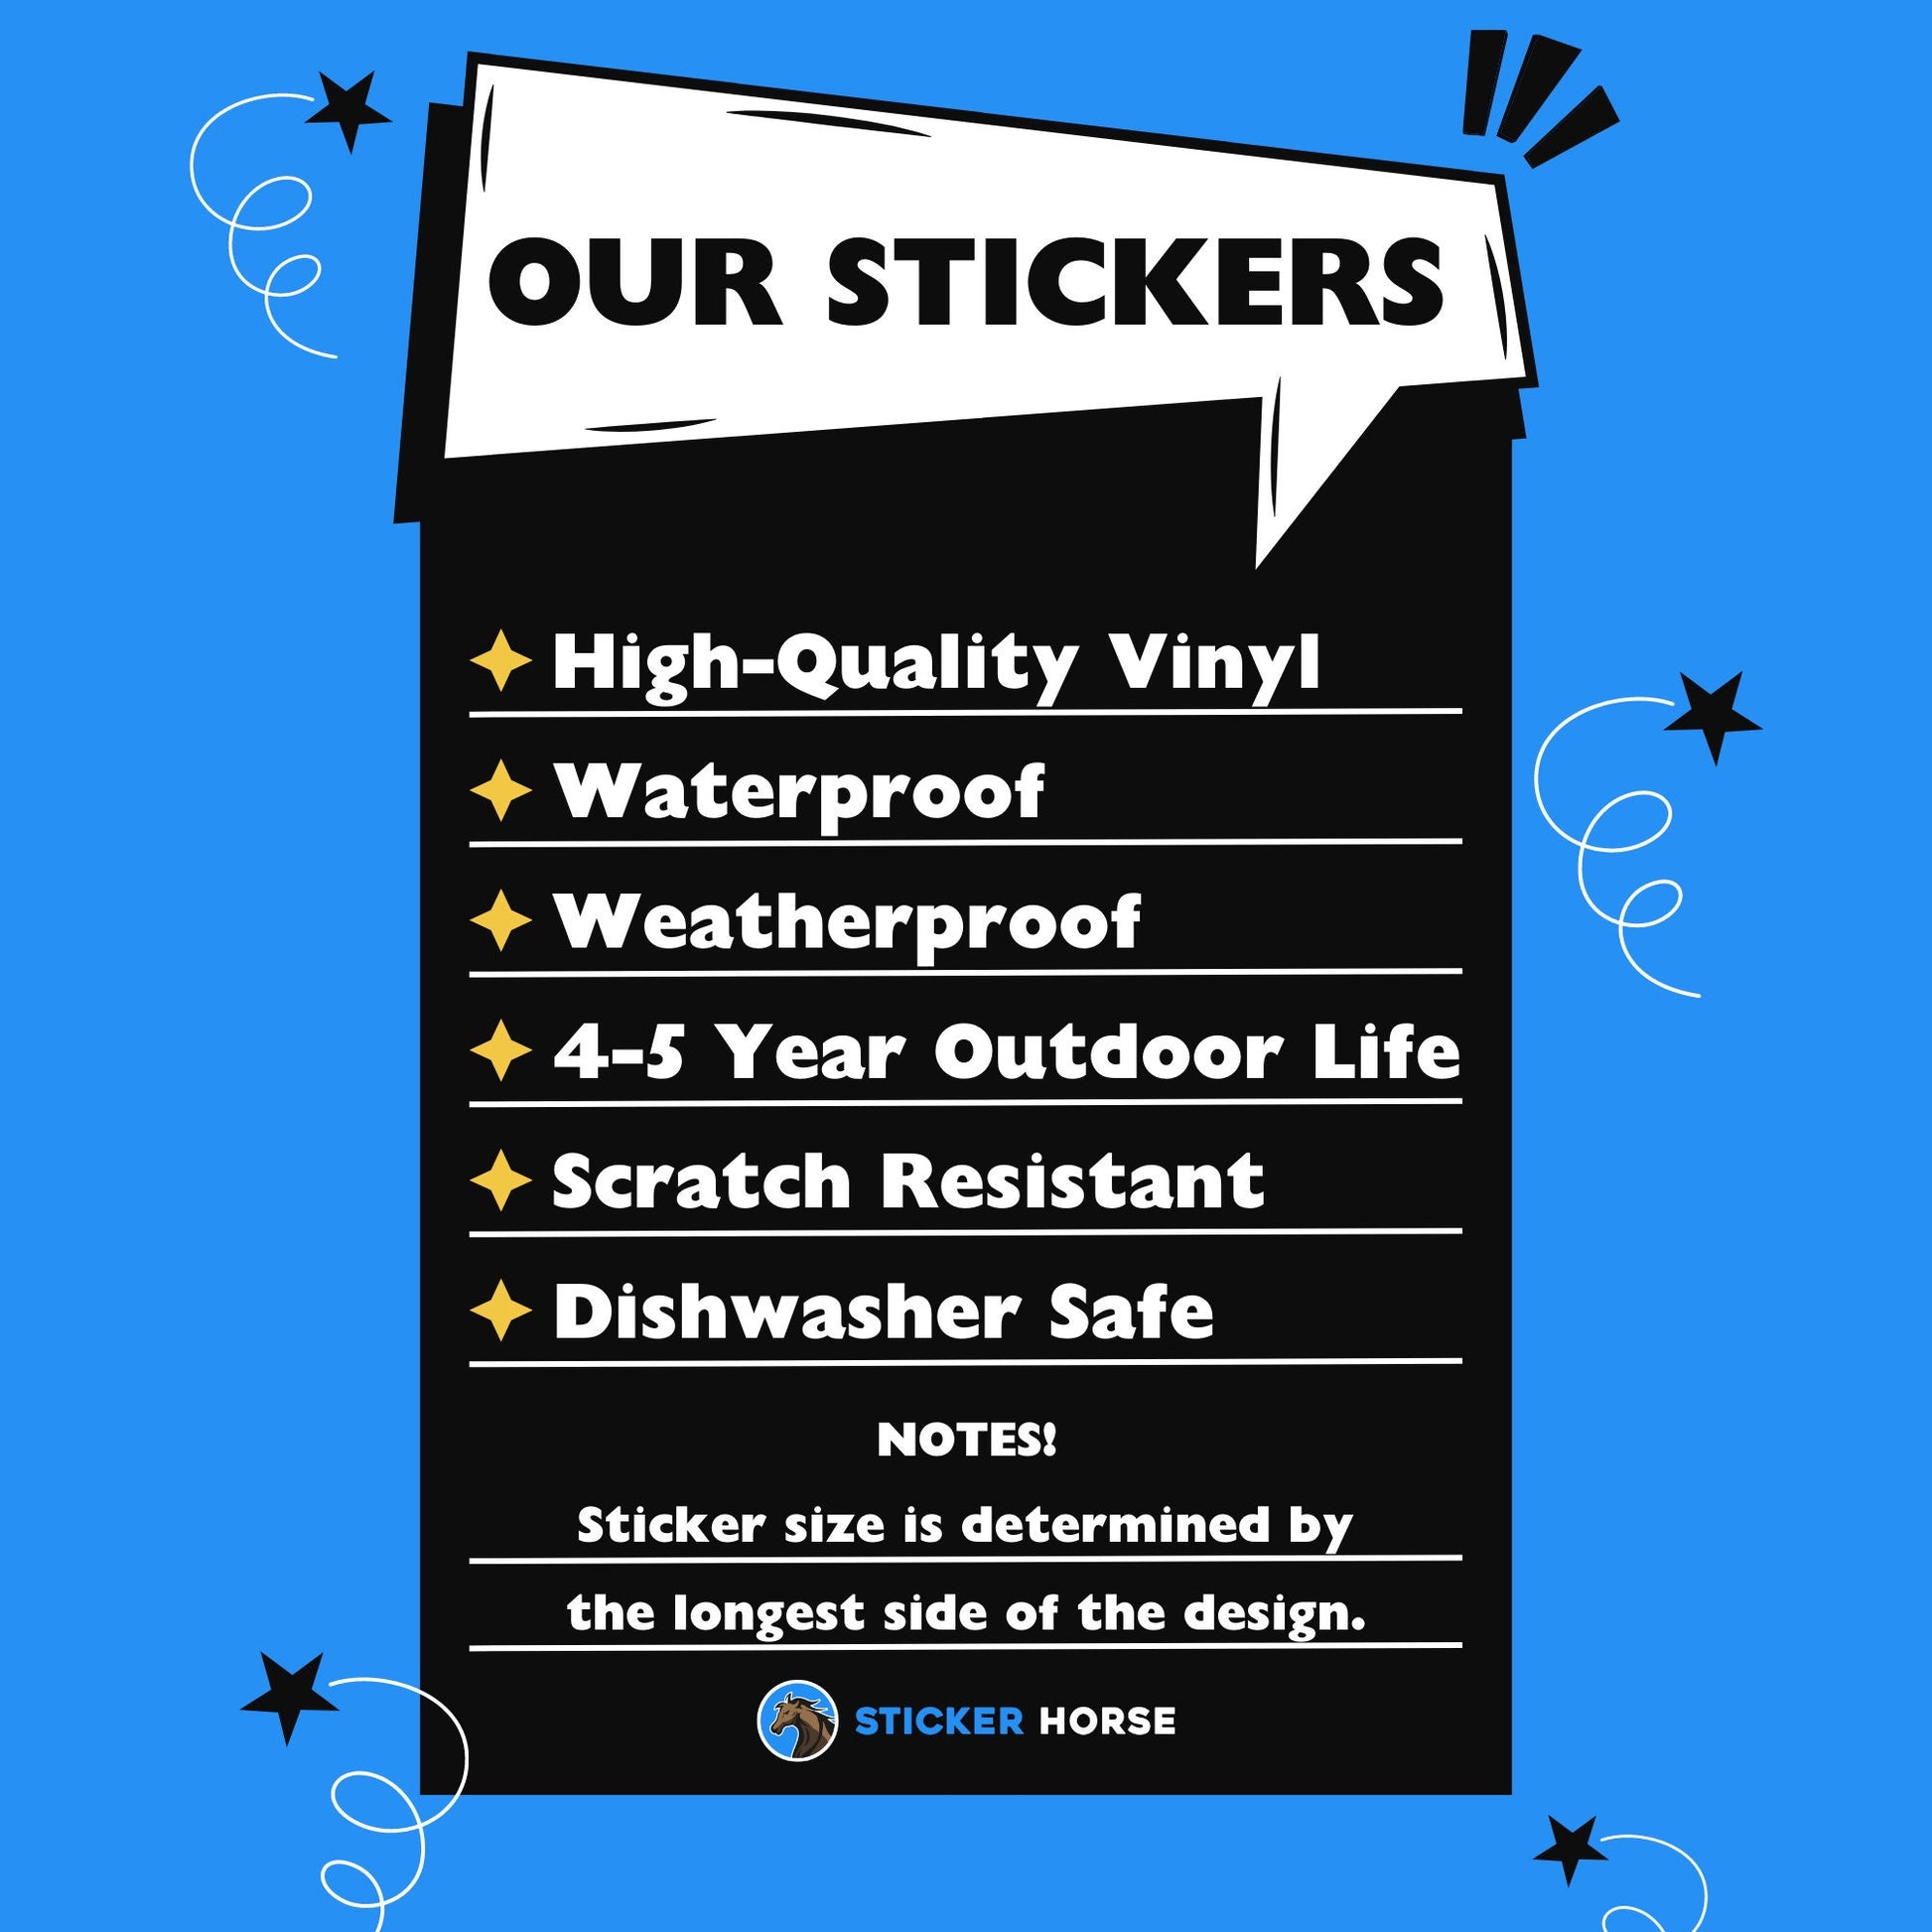 Wannabe Shark Sticker, Fish With Shark Fin Sticker, Cute Fish Shark Sticker, Waterproof Vinyl Sticker